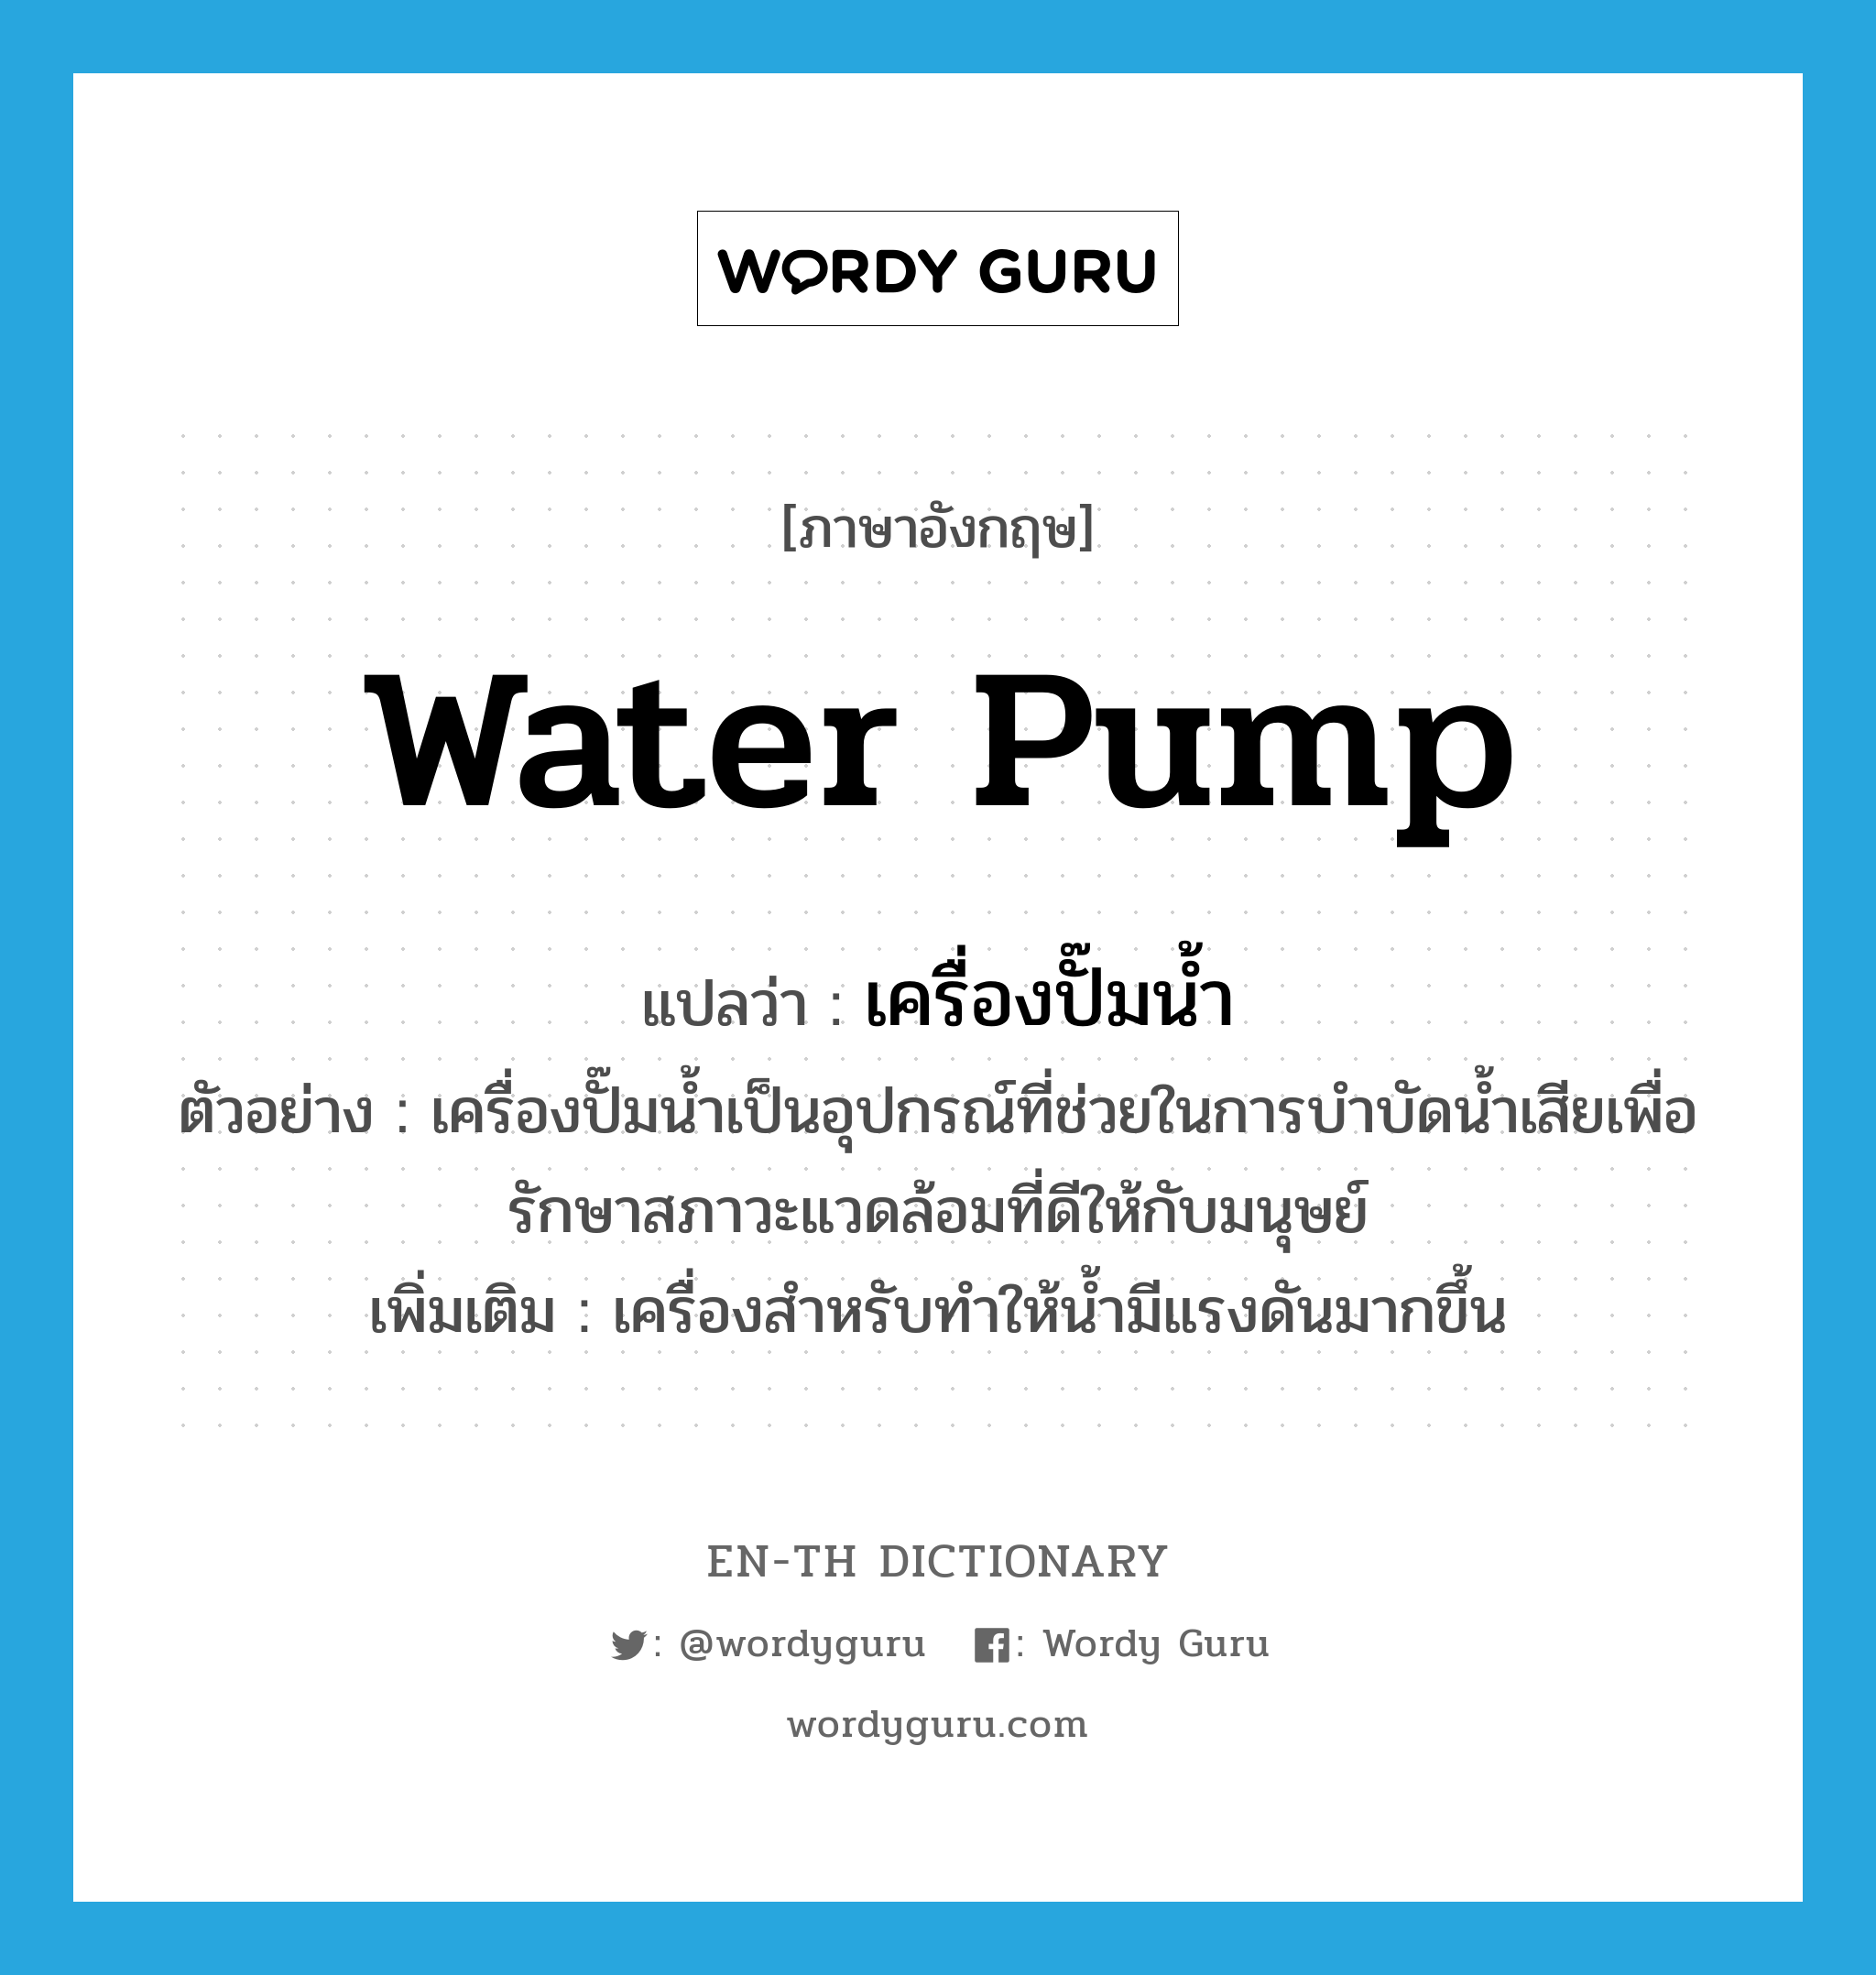 water pump แปลว่า?, คำศัพท์ภาษาอังกฤษ water pump แปลว่า เครื่องปั๊มน้ำ ประเภท N ตัวอย่าง เครื่องปั๊มน้ำเป็นอุปกรณ์ที่ช่วยในการบำบัดน้ำเสียเพื่อรักษาสภาวะแวดล้อมที่ดีให้กับมนุษย์ เพิ่มเติม เครื่องสำหรับทำให้น้ำมีแรงดันมากขึ้น หมวด N